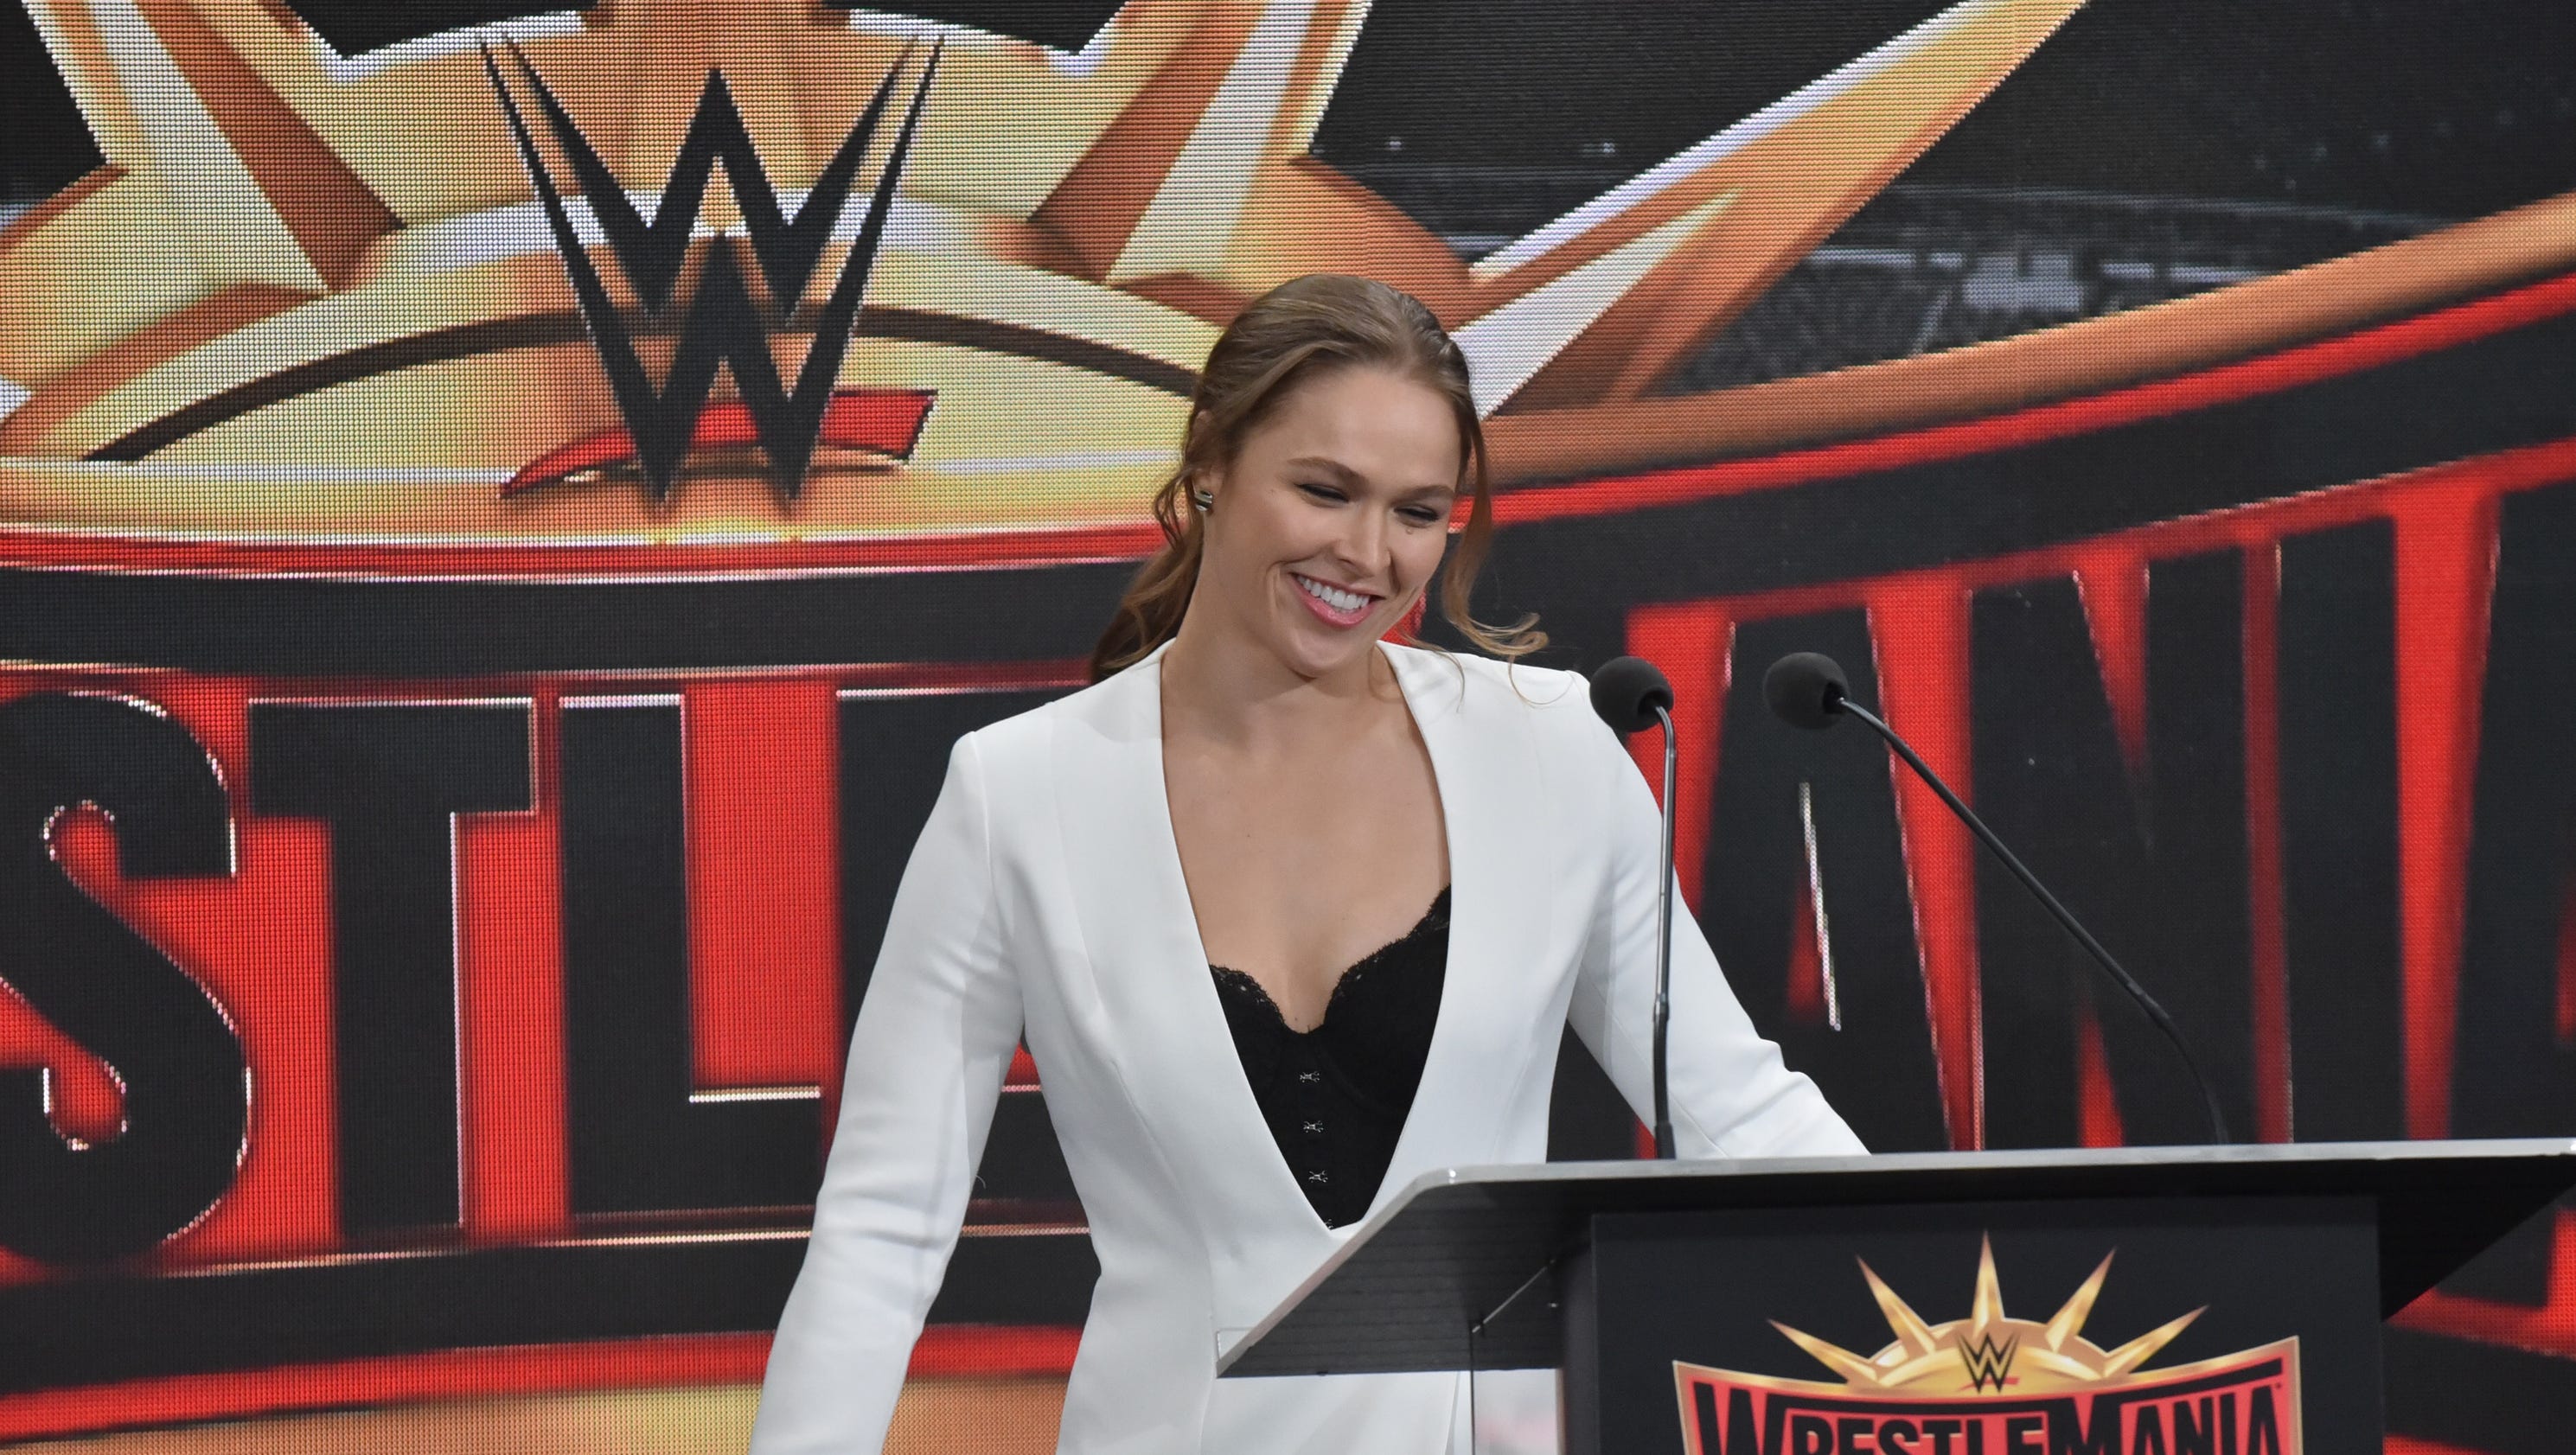 WWE bringing WrestleMania back to MetLife in 2019